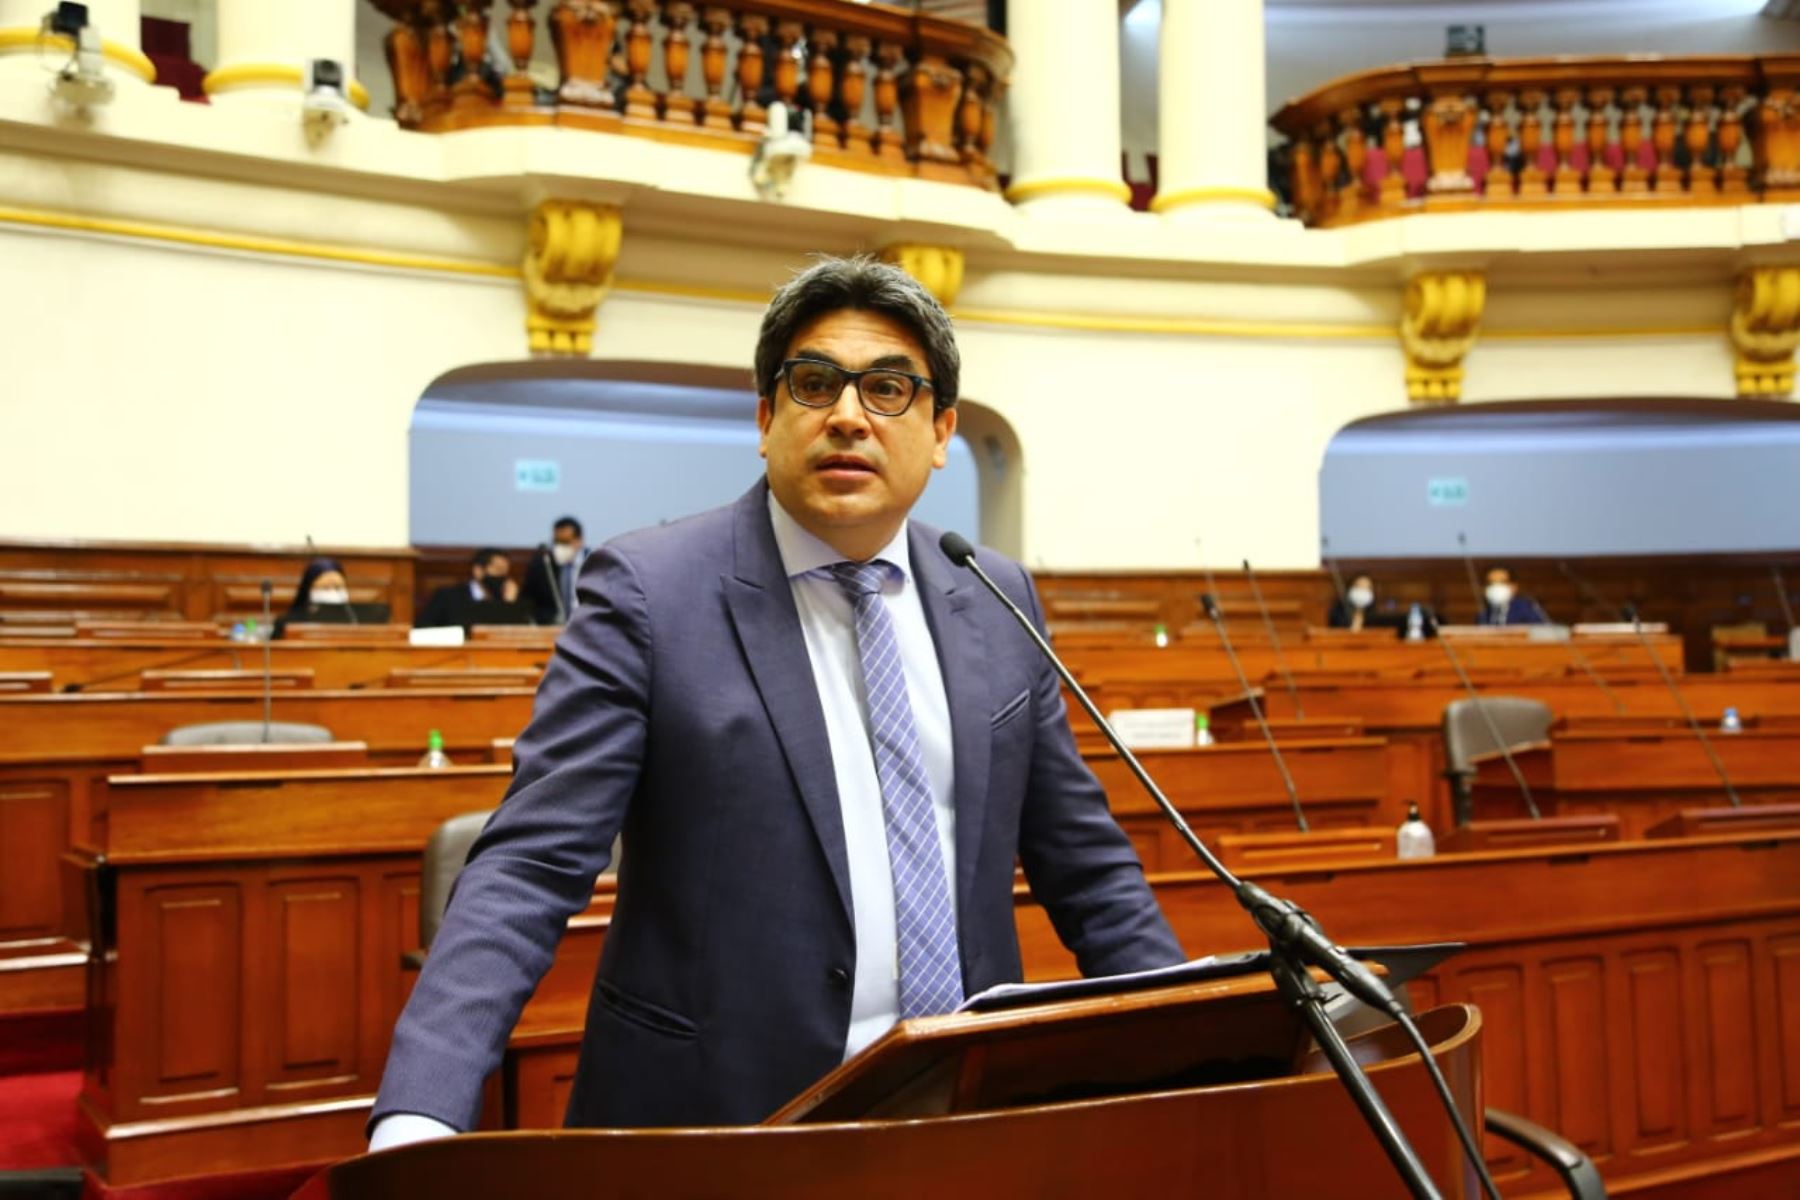 Ministro de Educación, Martín Benavides, responde al pliego interpelatorio en sesión del pleno del Congreso. Foto: Congreso de la República.